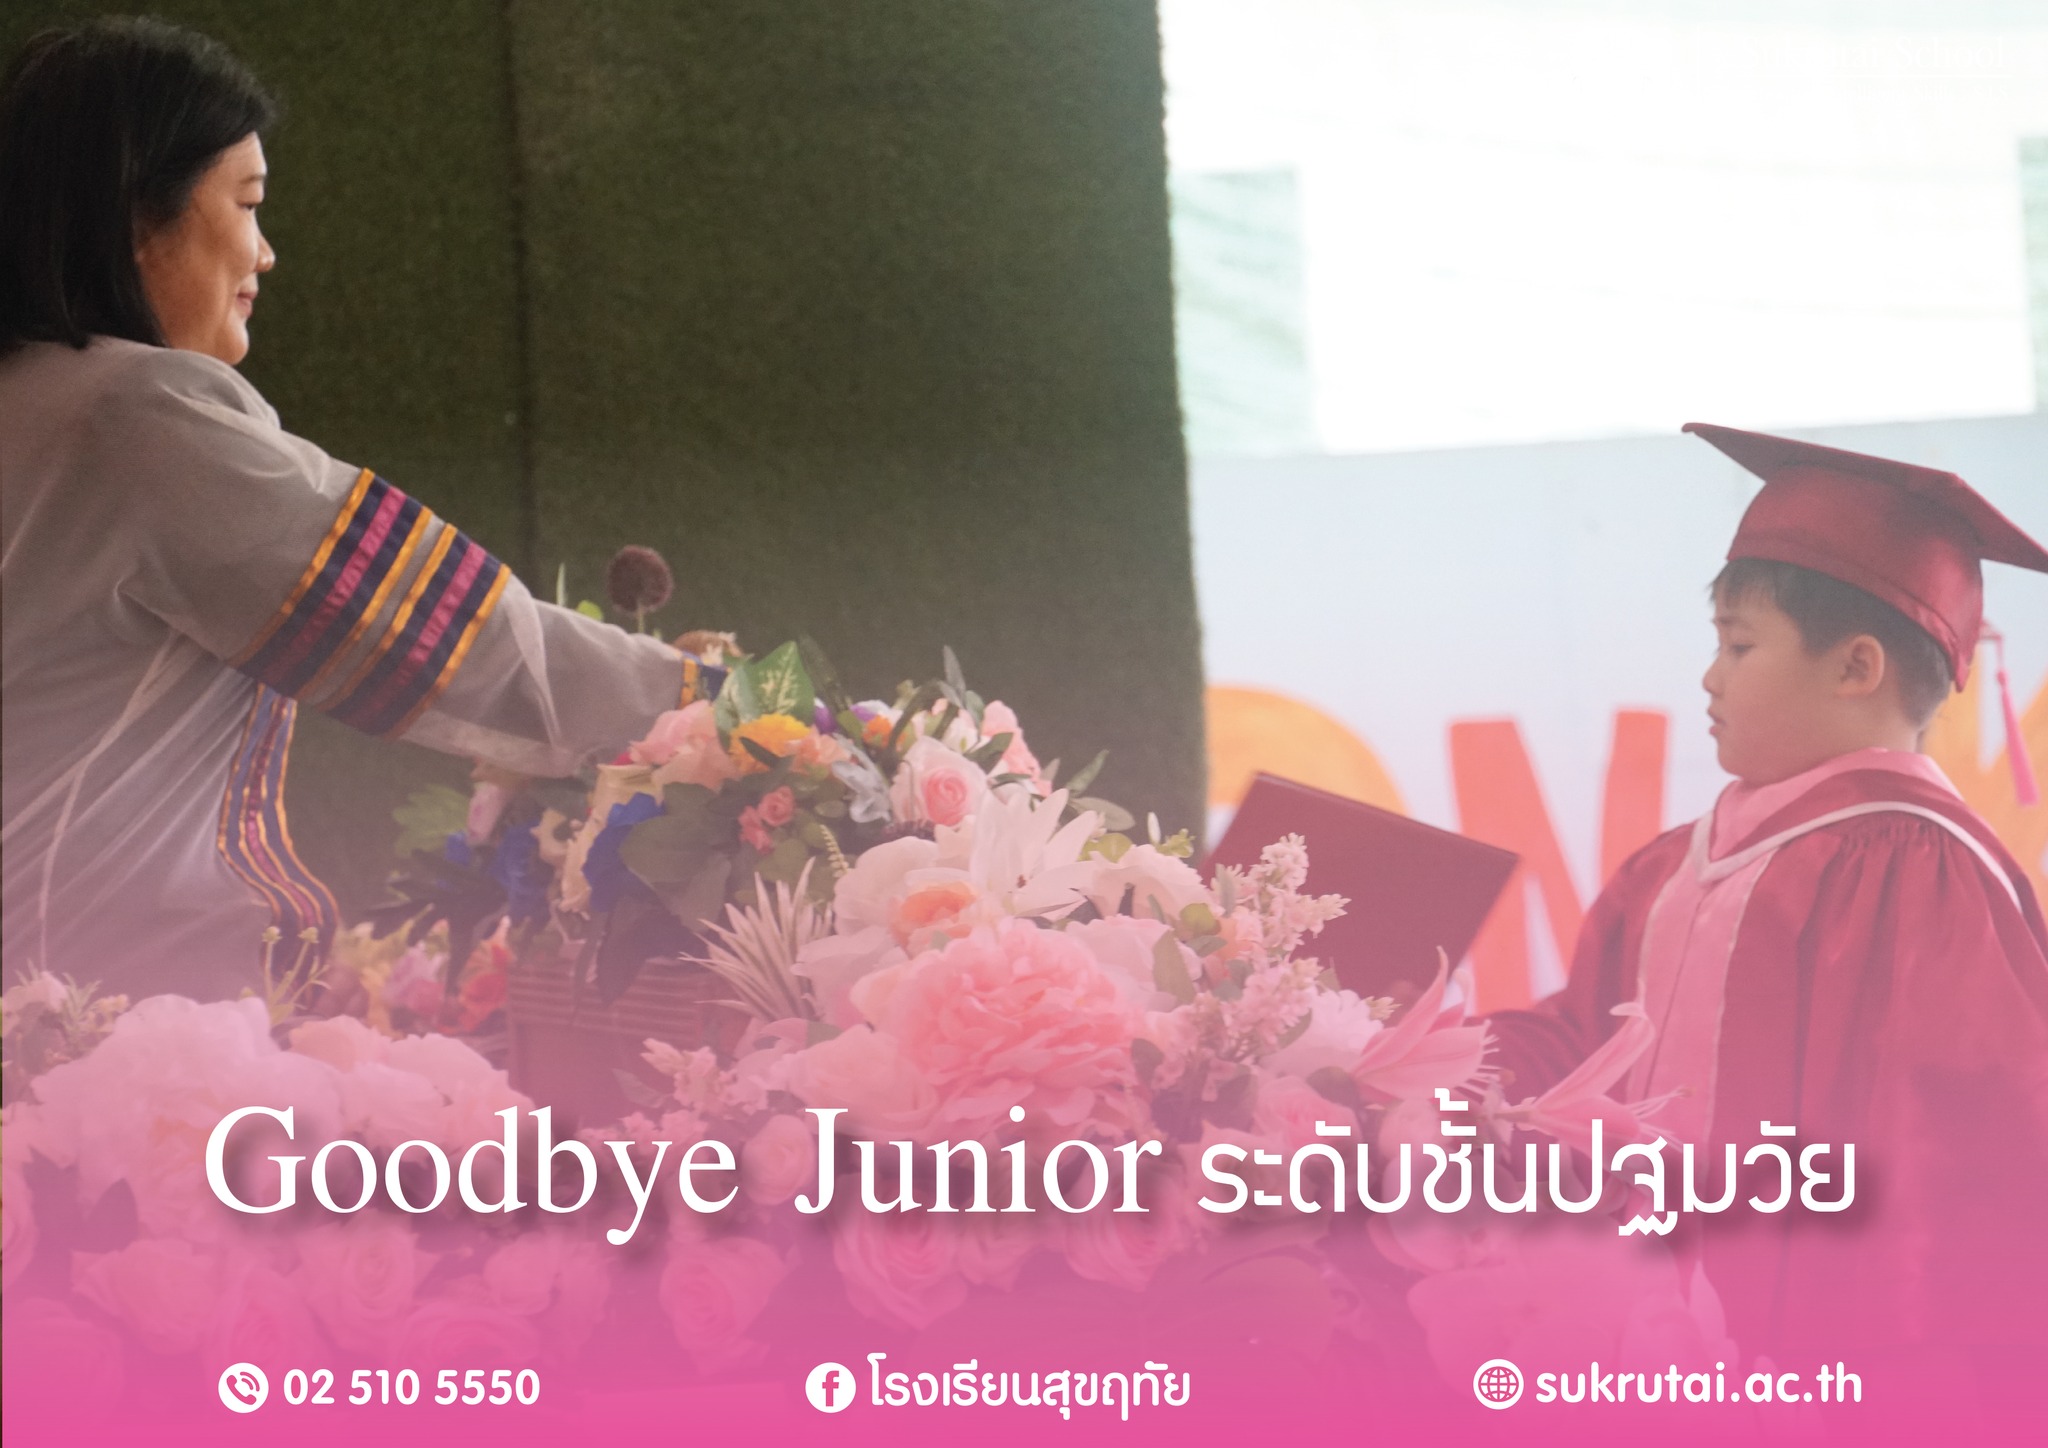 วันที่ 9 มีนาคม พ.ศ.2566 Goodbye Junior ระดับชั้นปฐมวัย